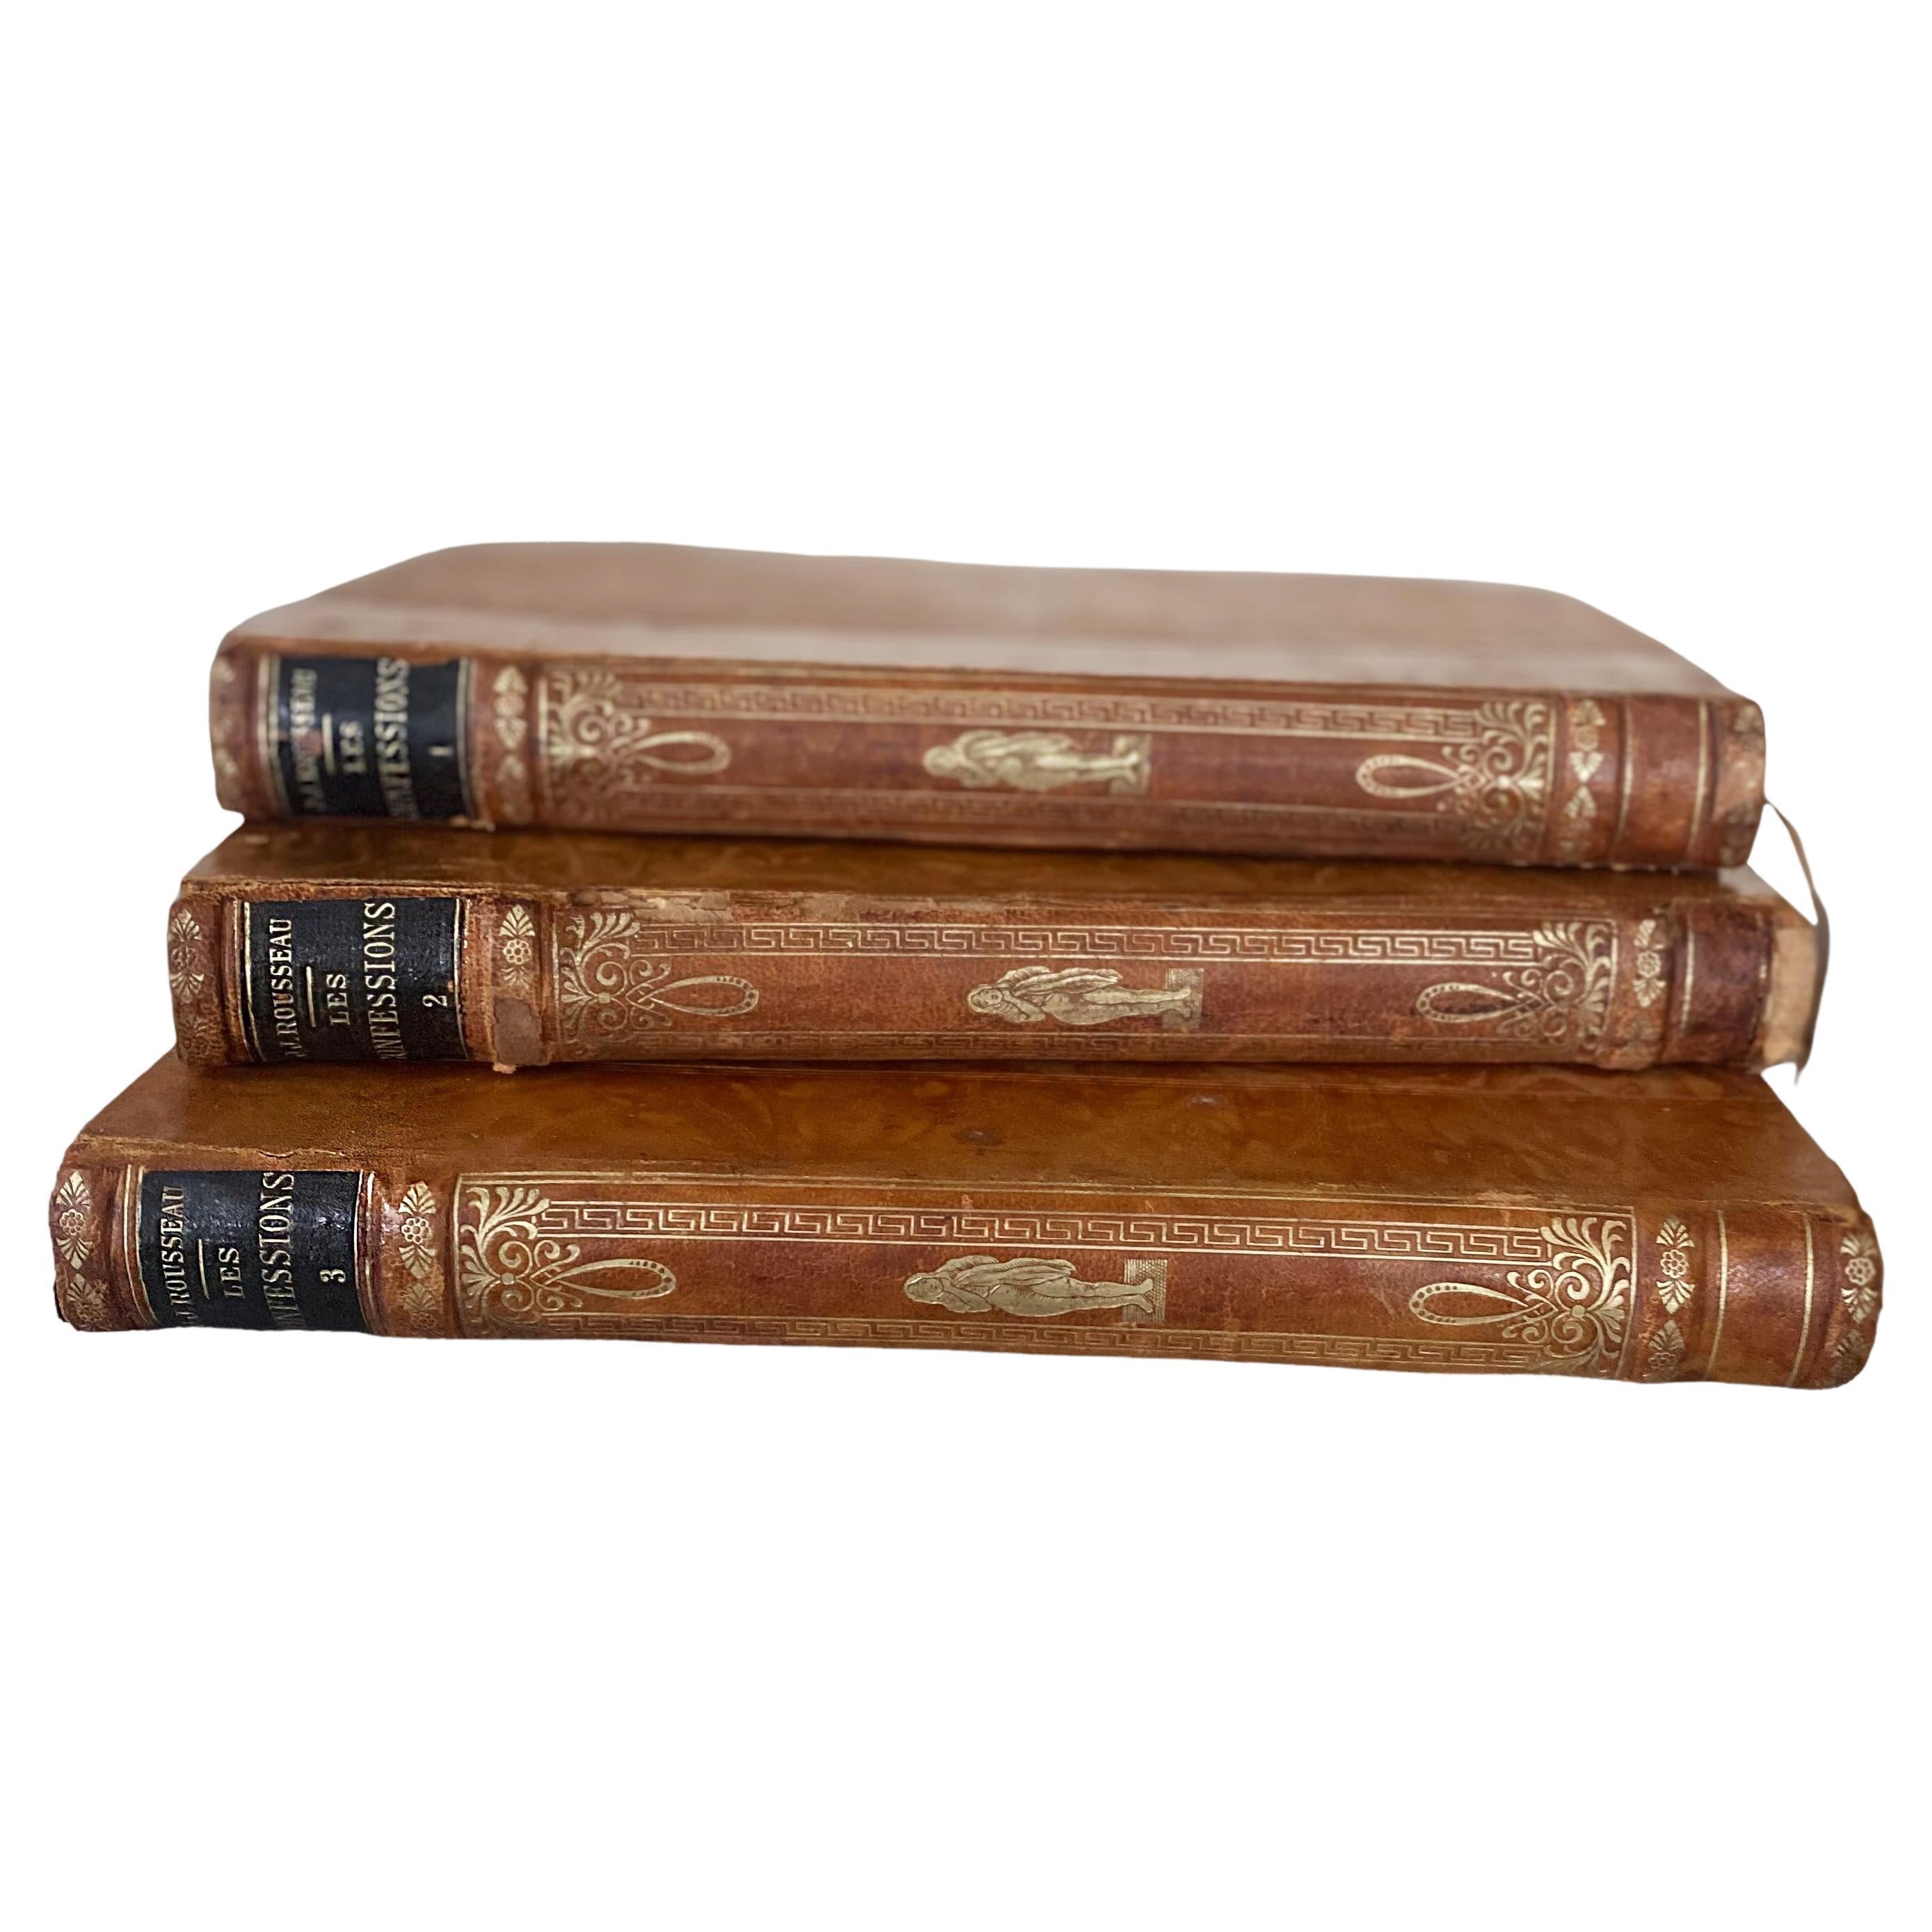 Les Confessions Französische antike Bücher von J-J ROUSSEAU, Ledergebunden, 3 Bände 